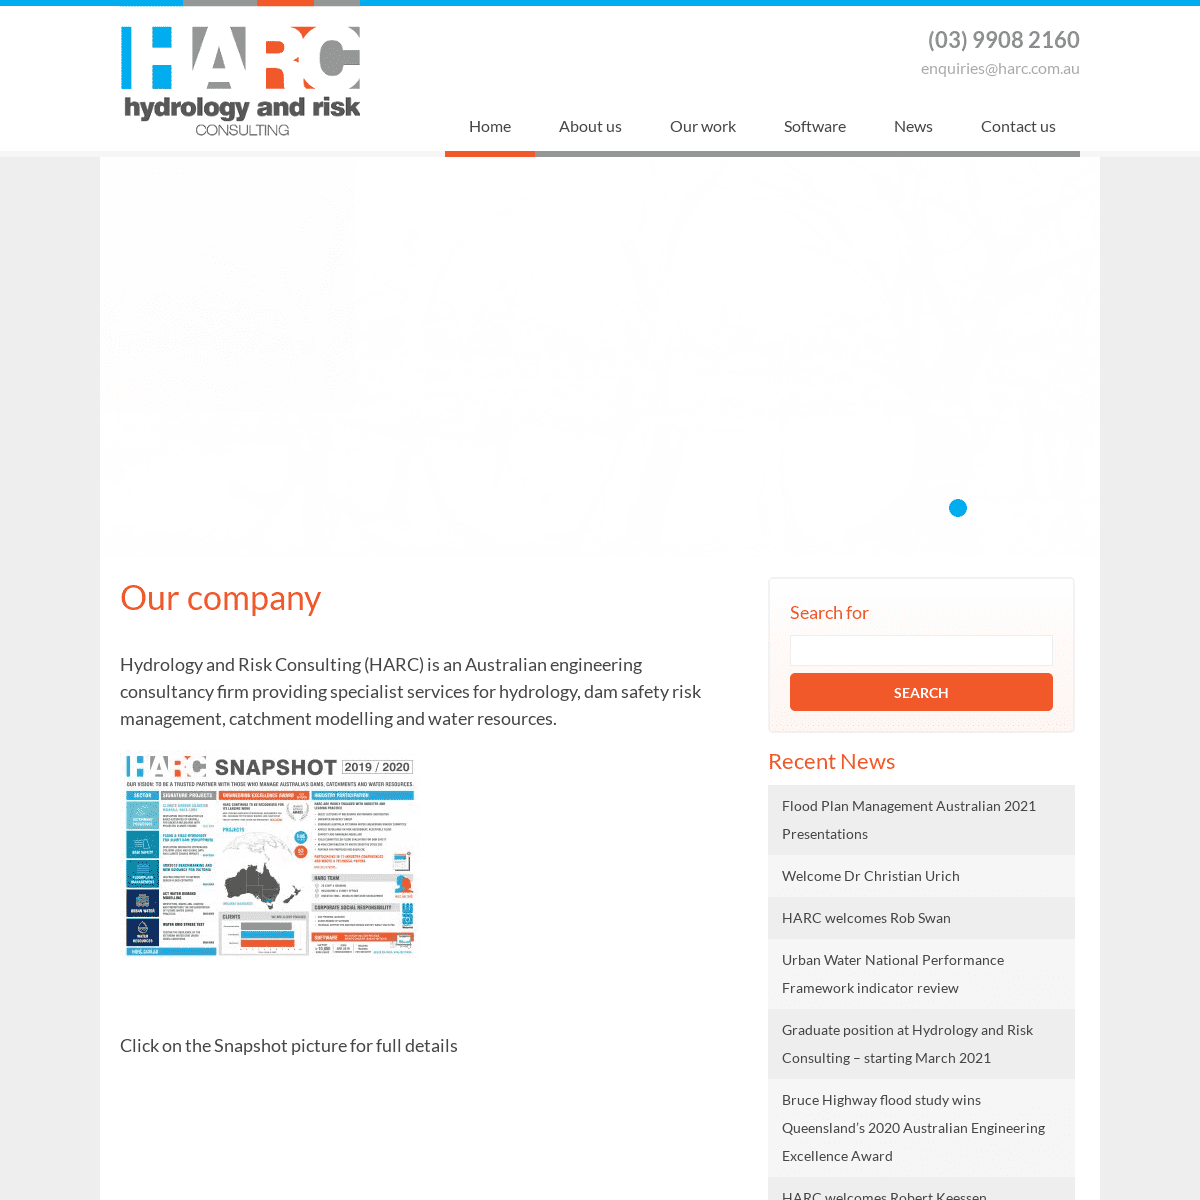 A complete backup of https://harc.com.au